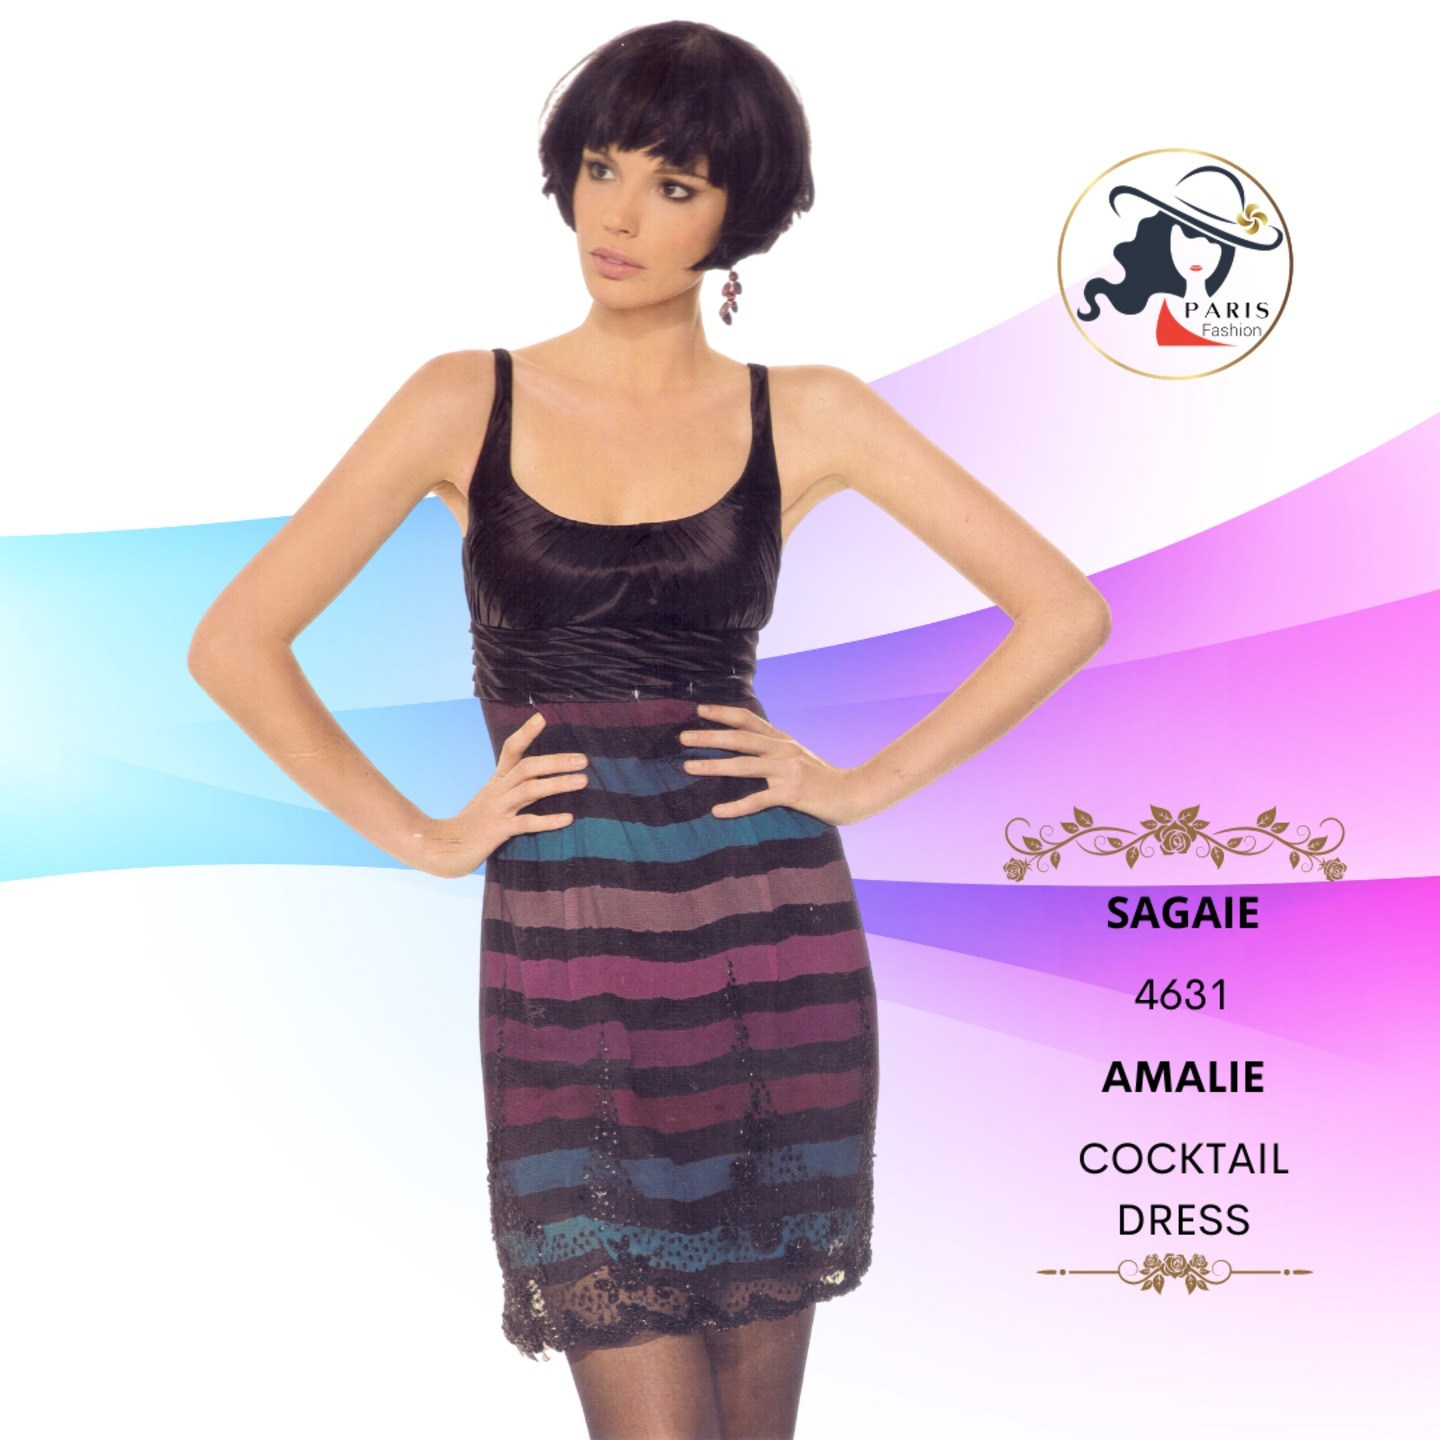 SAGAIE  4631  AMALIE  COCKTAIL DRESS